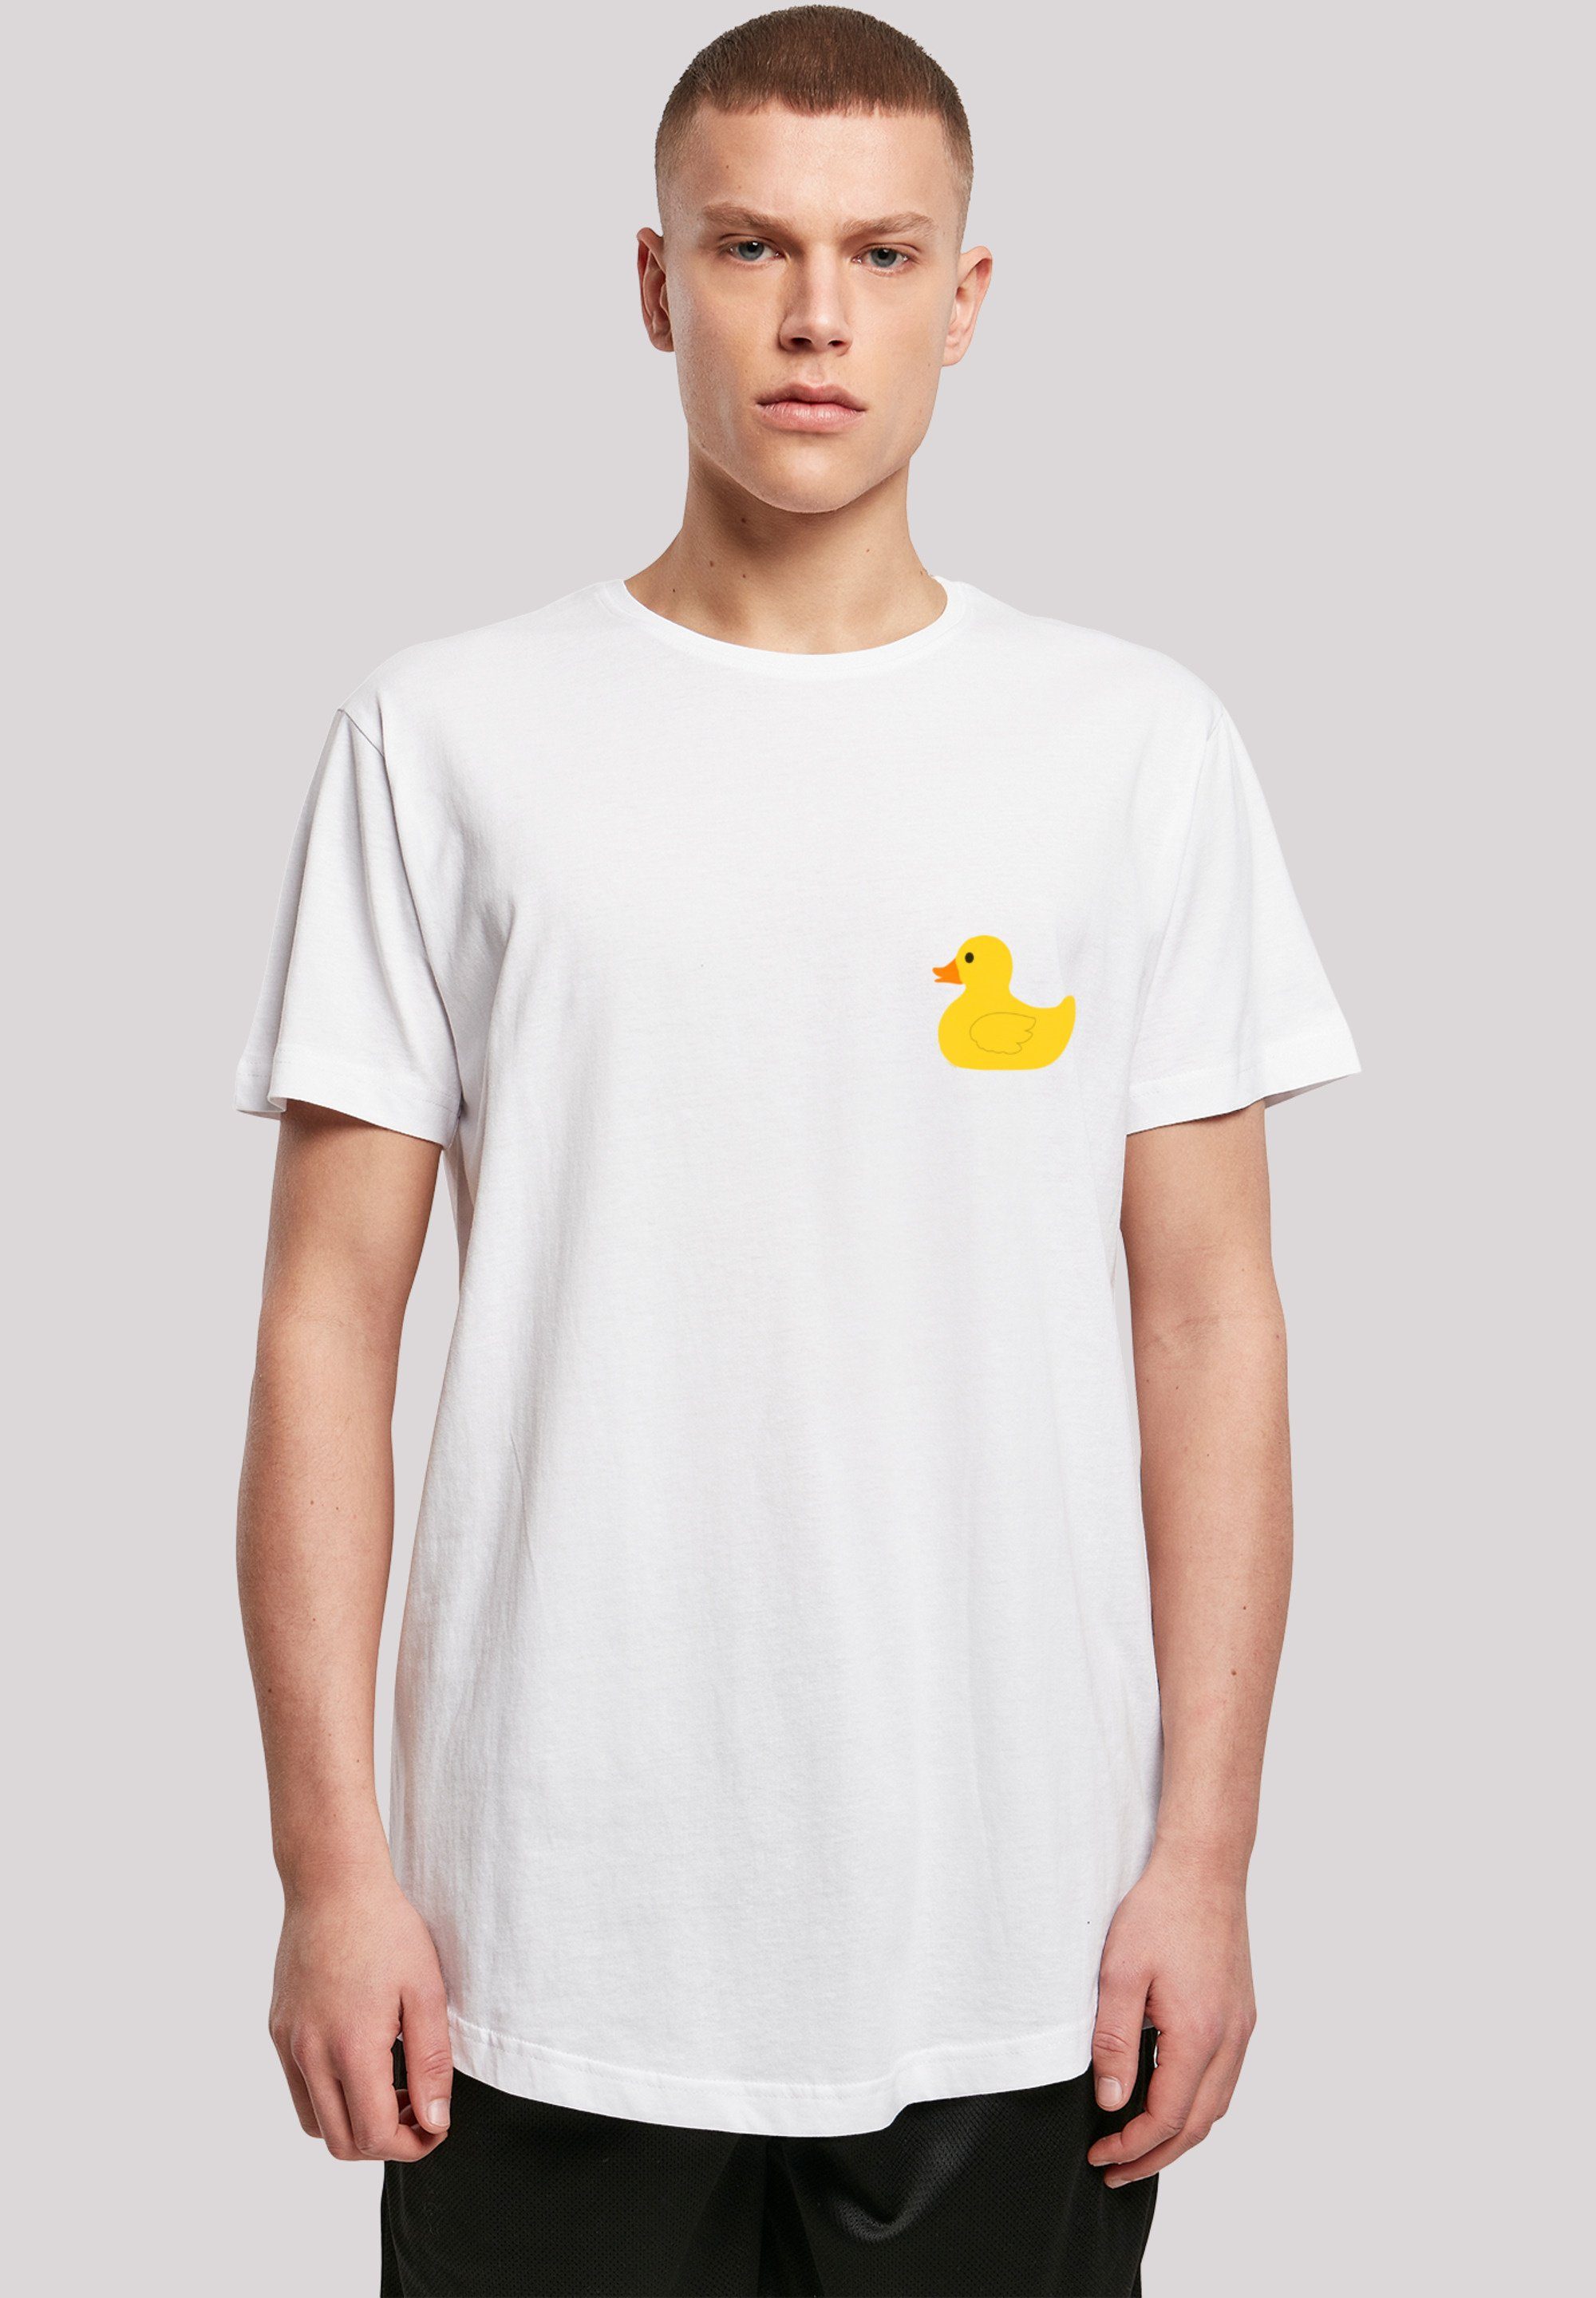 F4NT4STIC T-Shirt Yellow Rubber Duck LONG Print weiß